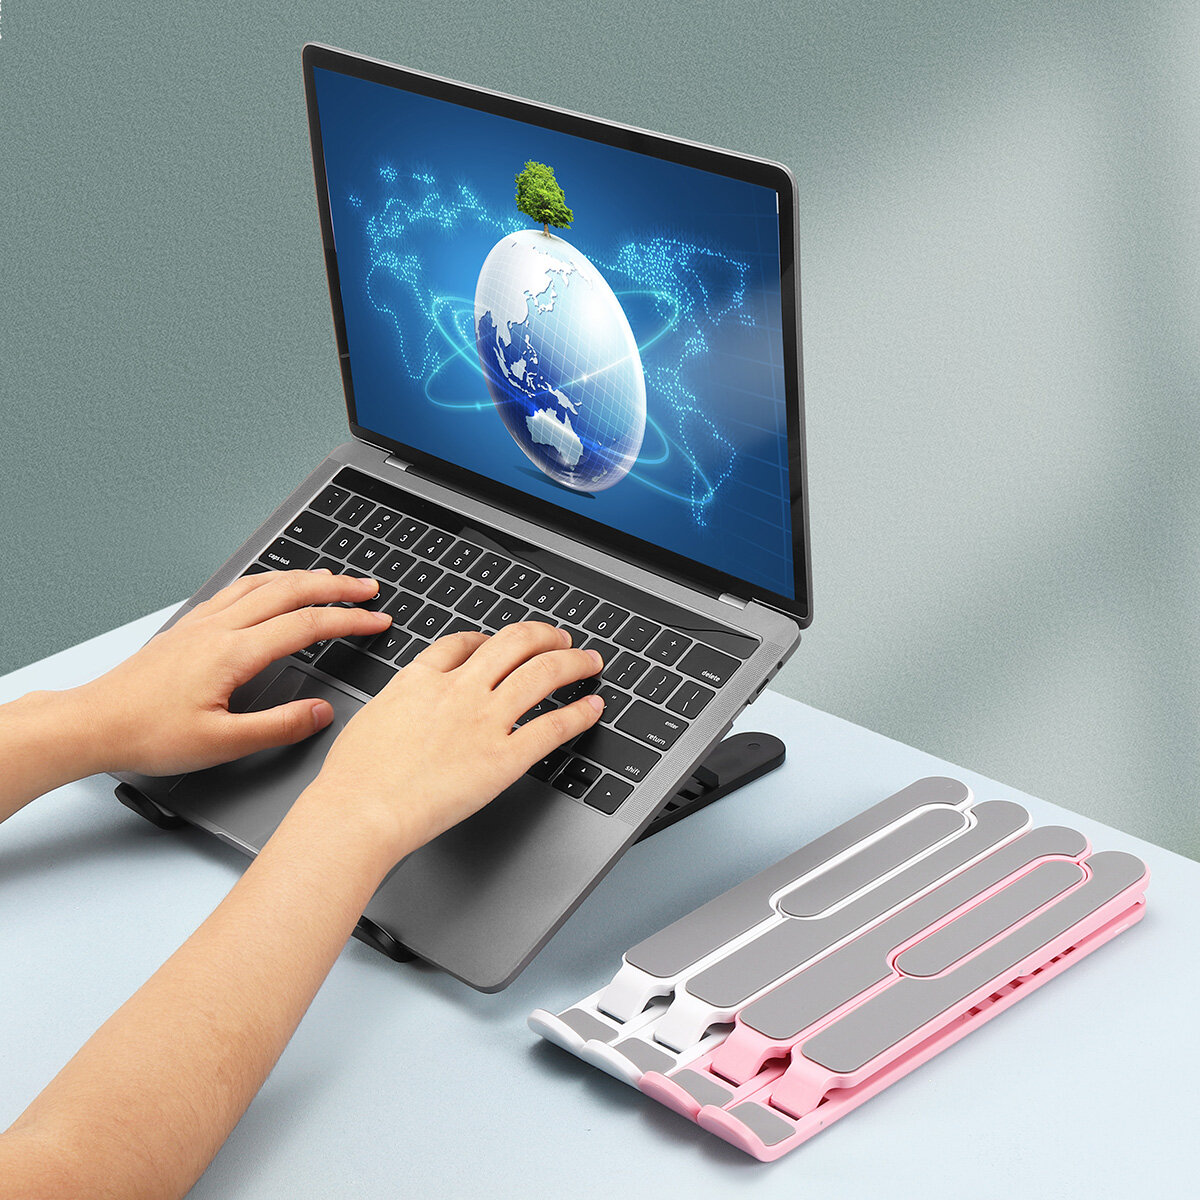 

ИНСМА P1 Pro Портативная алюминиевая складная подставка с регулируемой высотой Рассеивание тепла для ноутбука Macbook Но